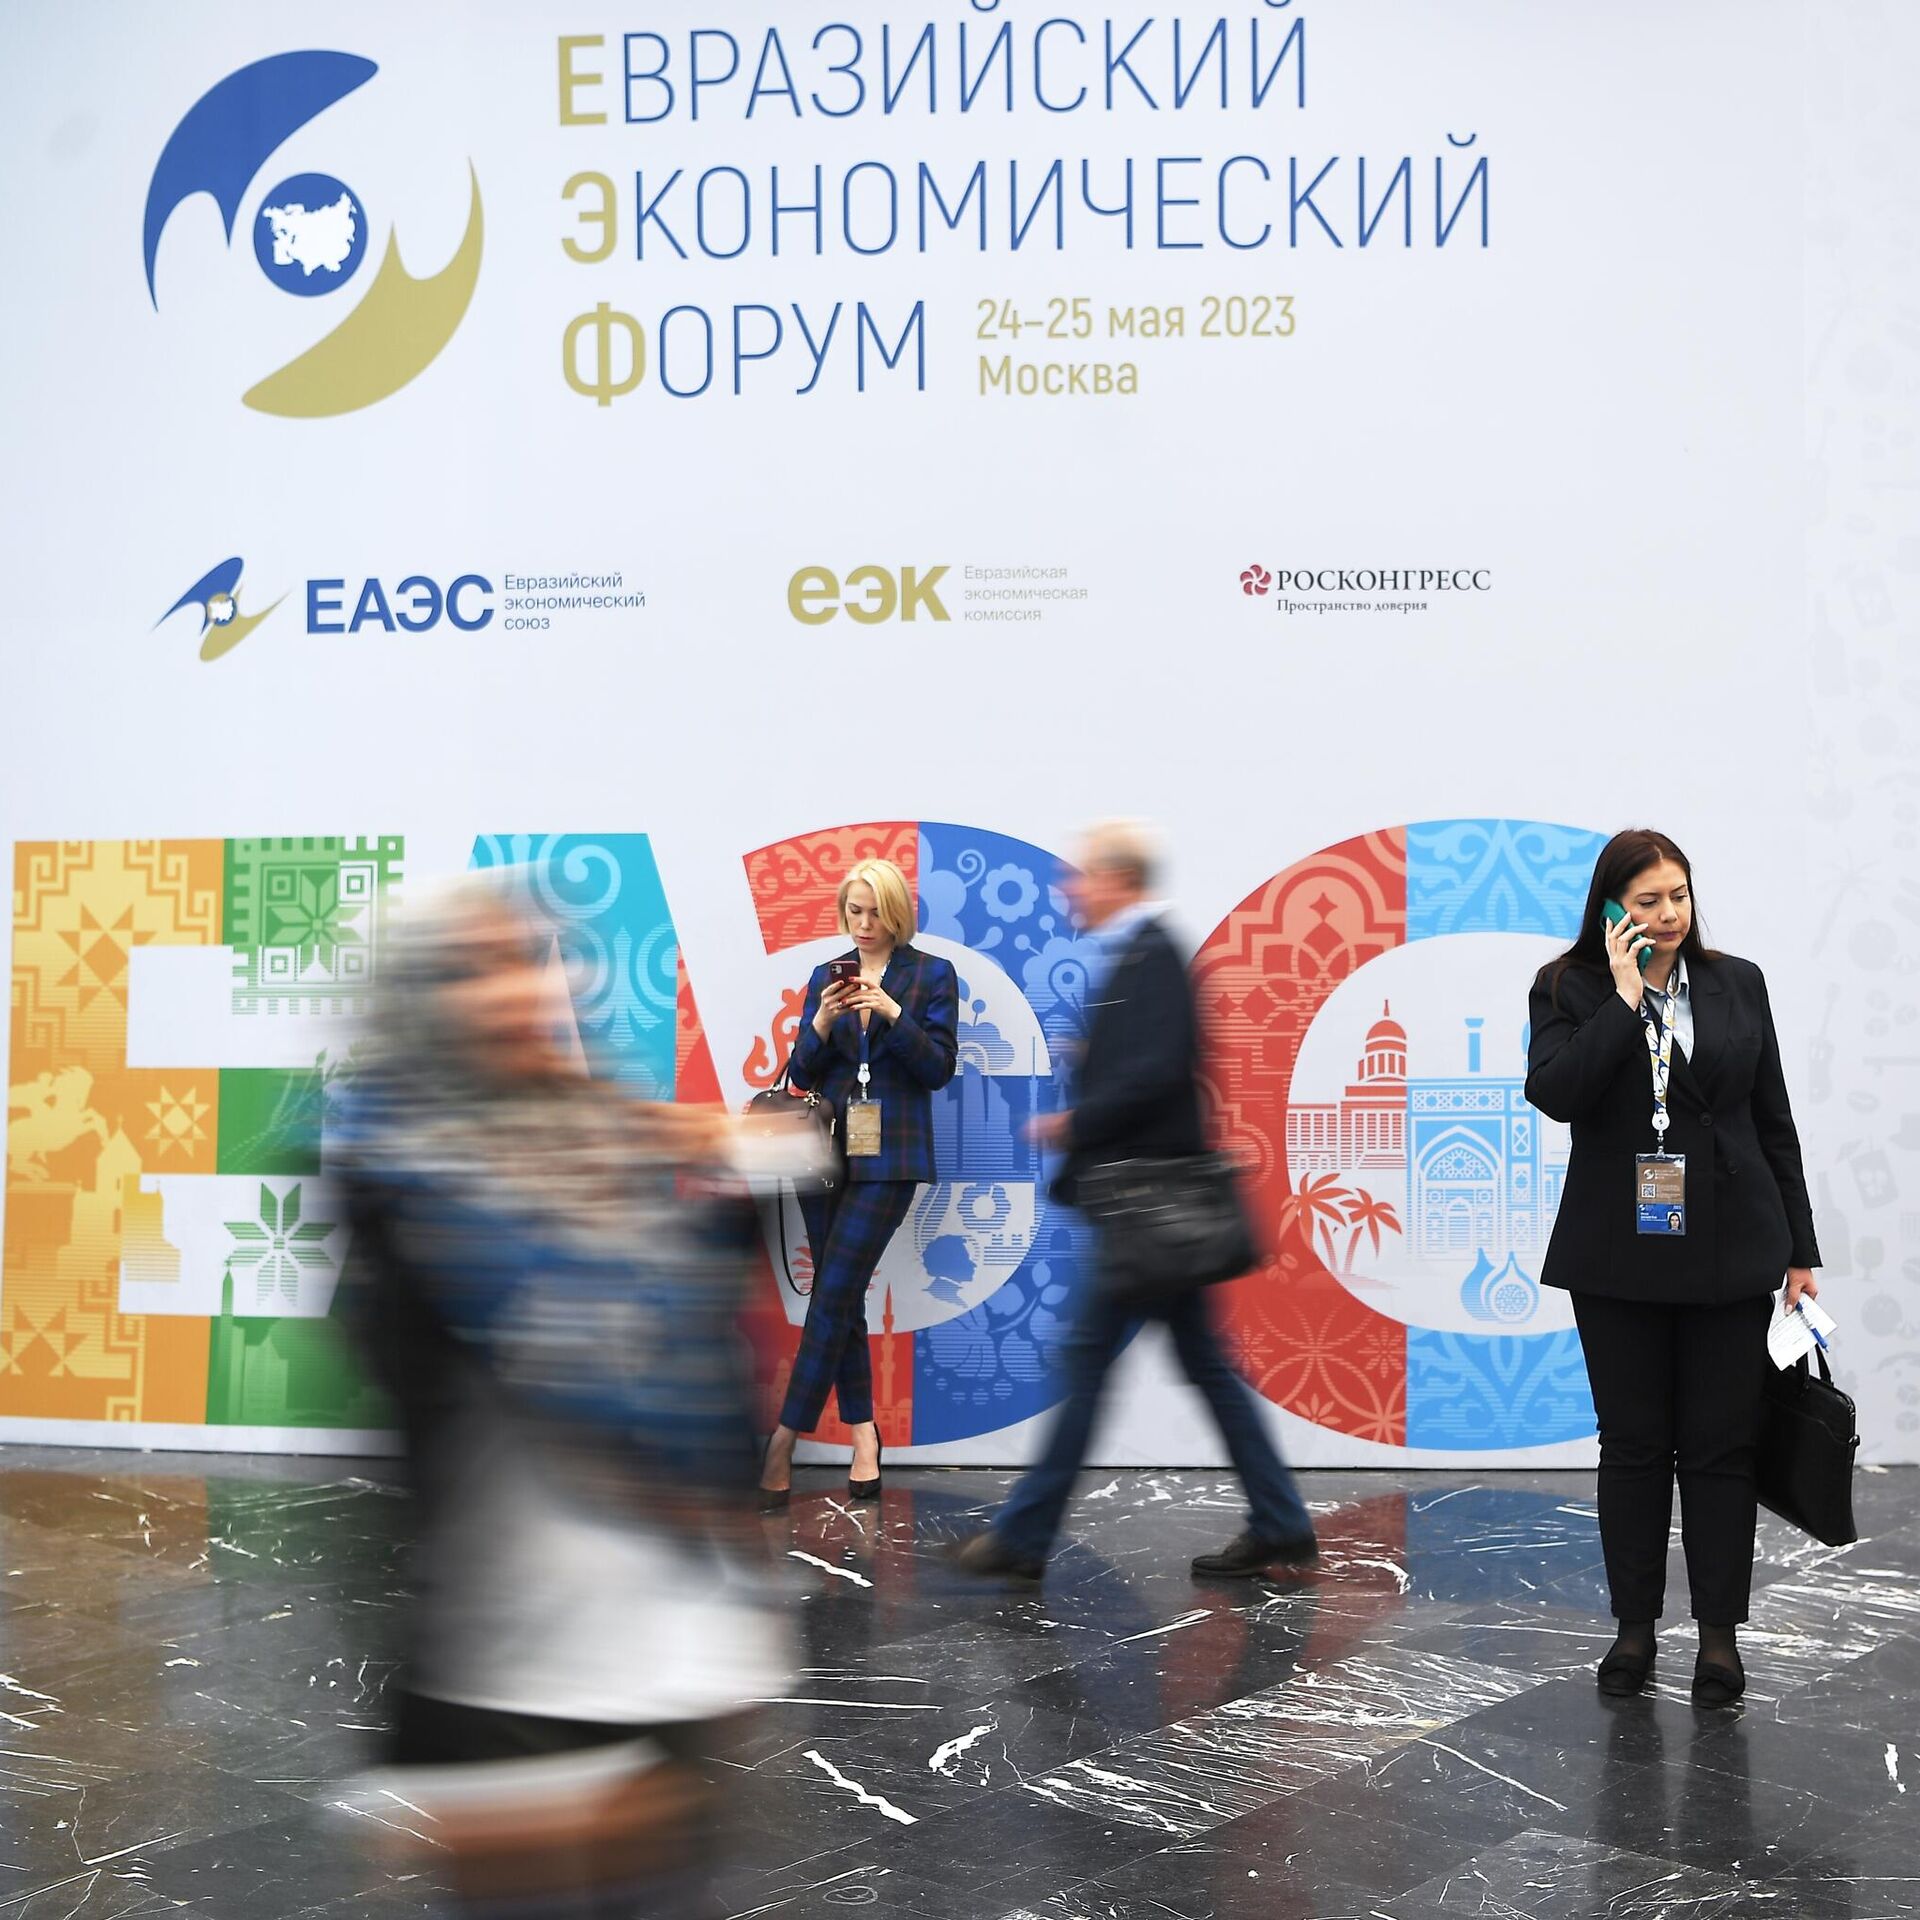 Евразийский экономический форум. Евразийский саммит 2023 Москва. Фотосессия Евразийского экономического Союза. Фото участников ЕАЭС 2023. Валюта ЕАЭС.